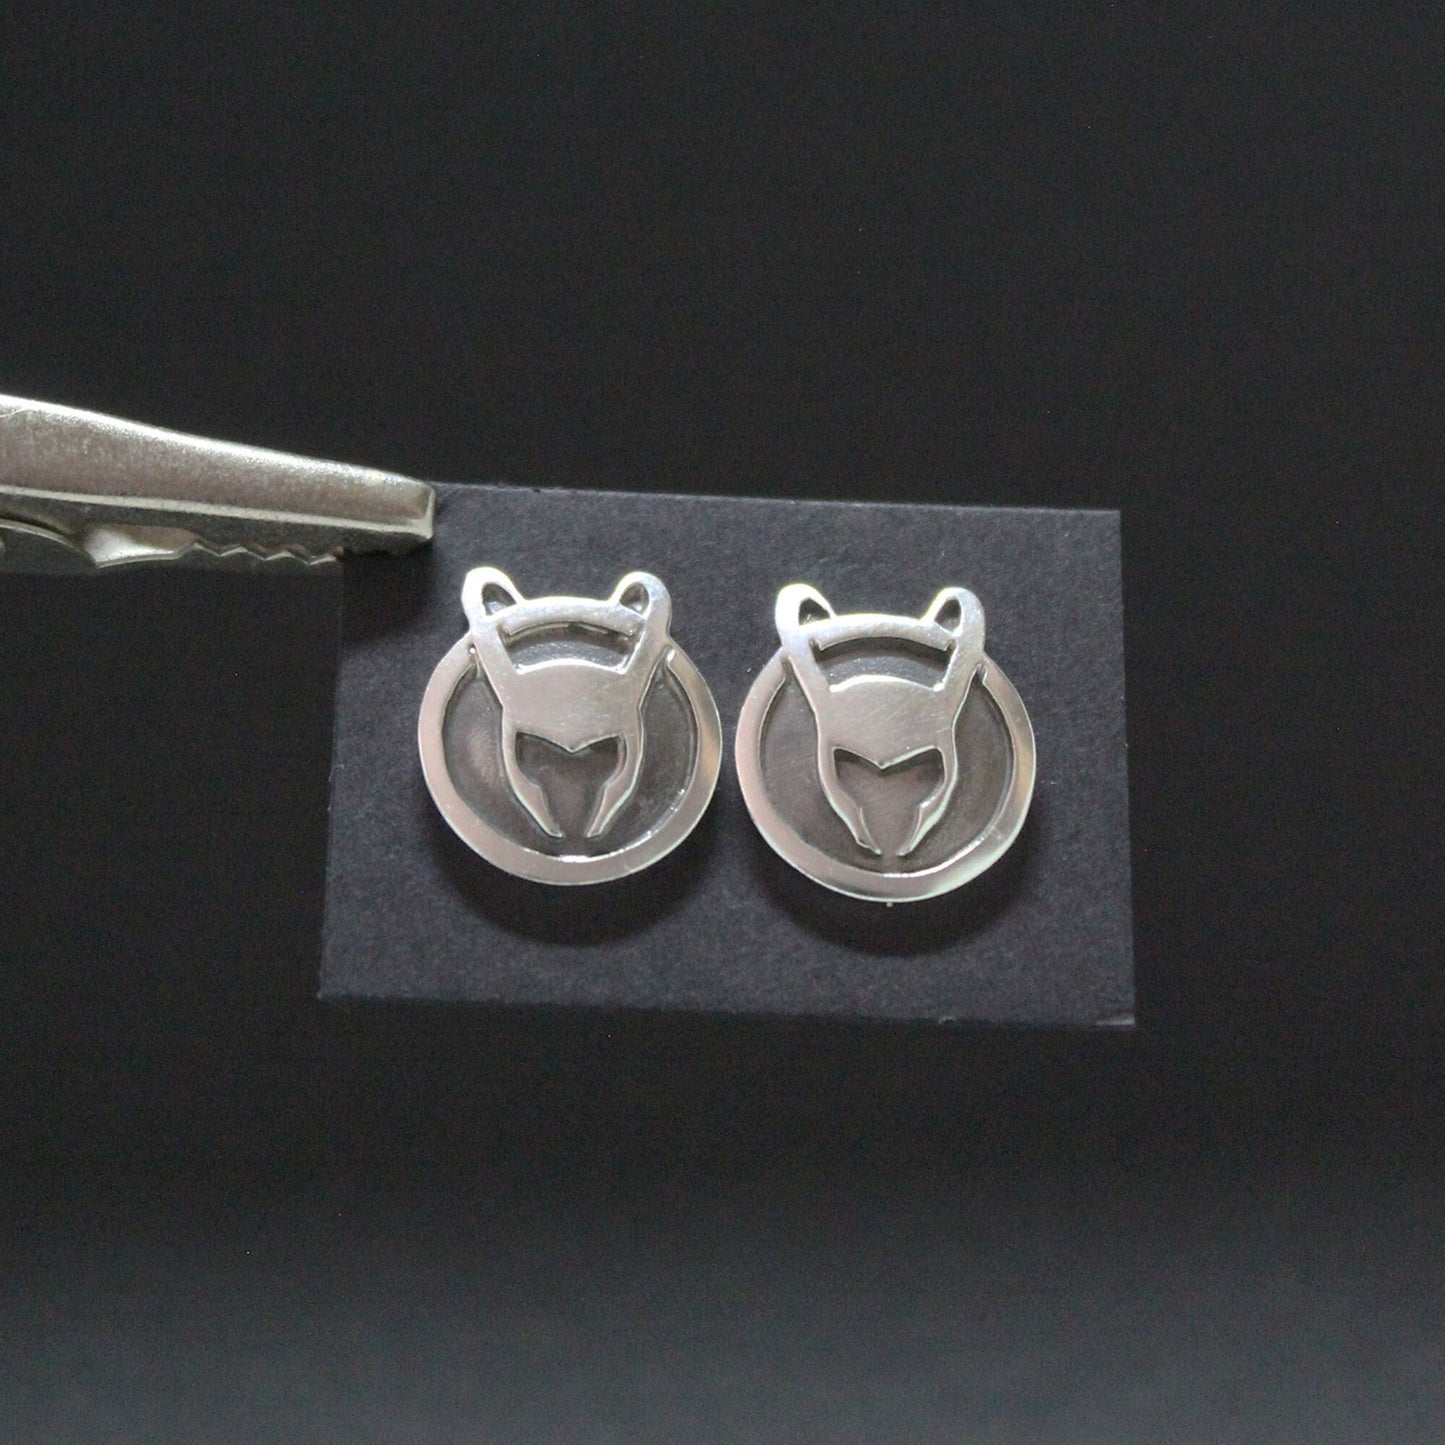 LOKI earrings in 925 silver